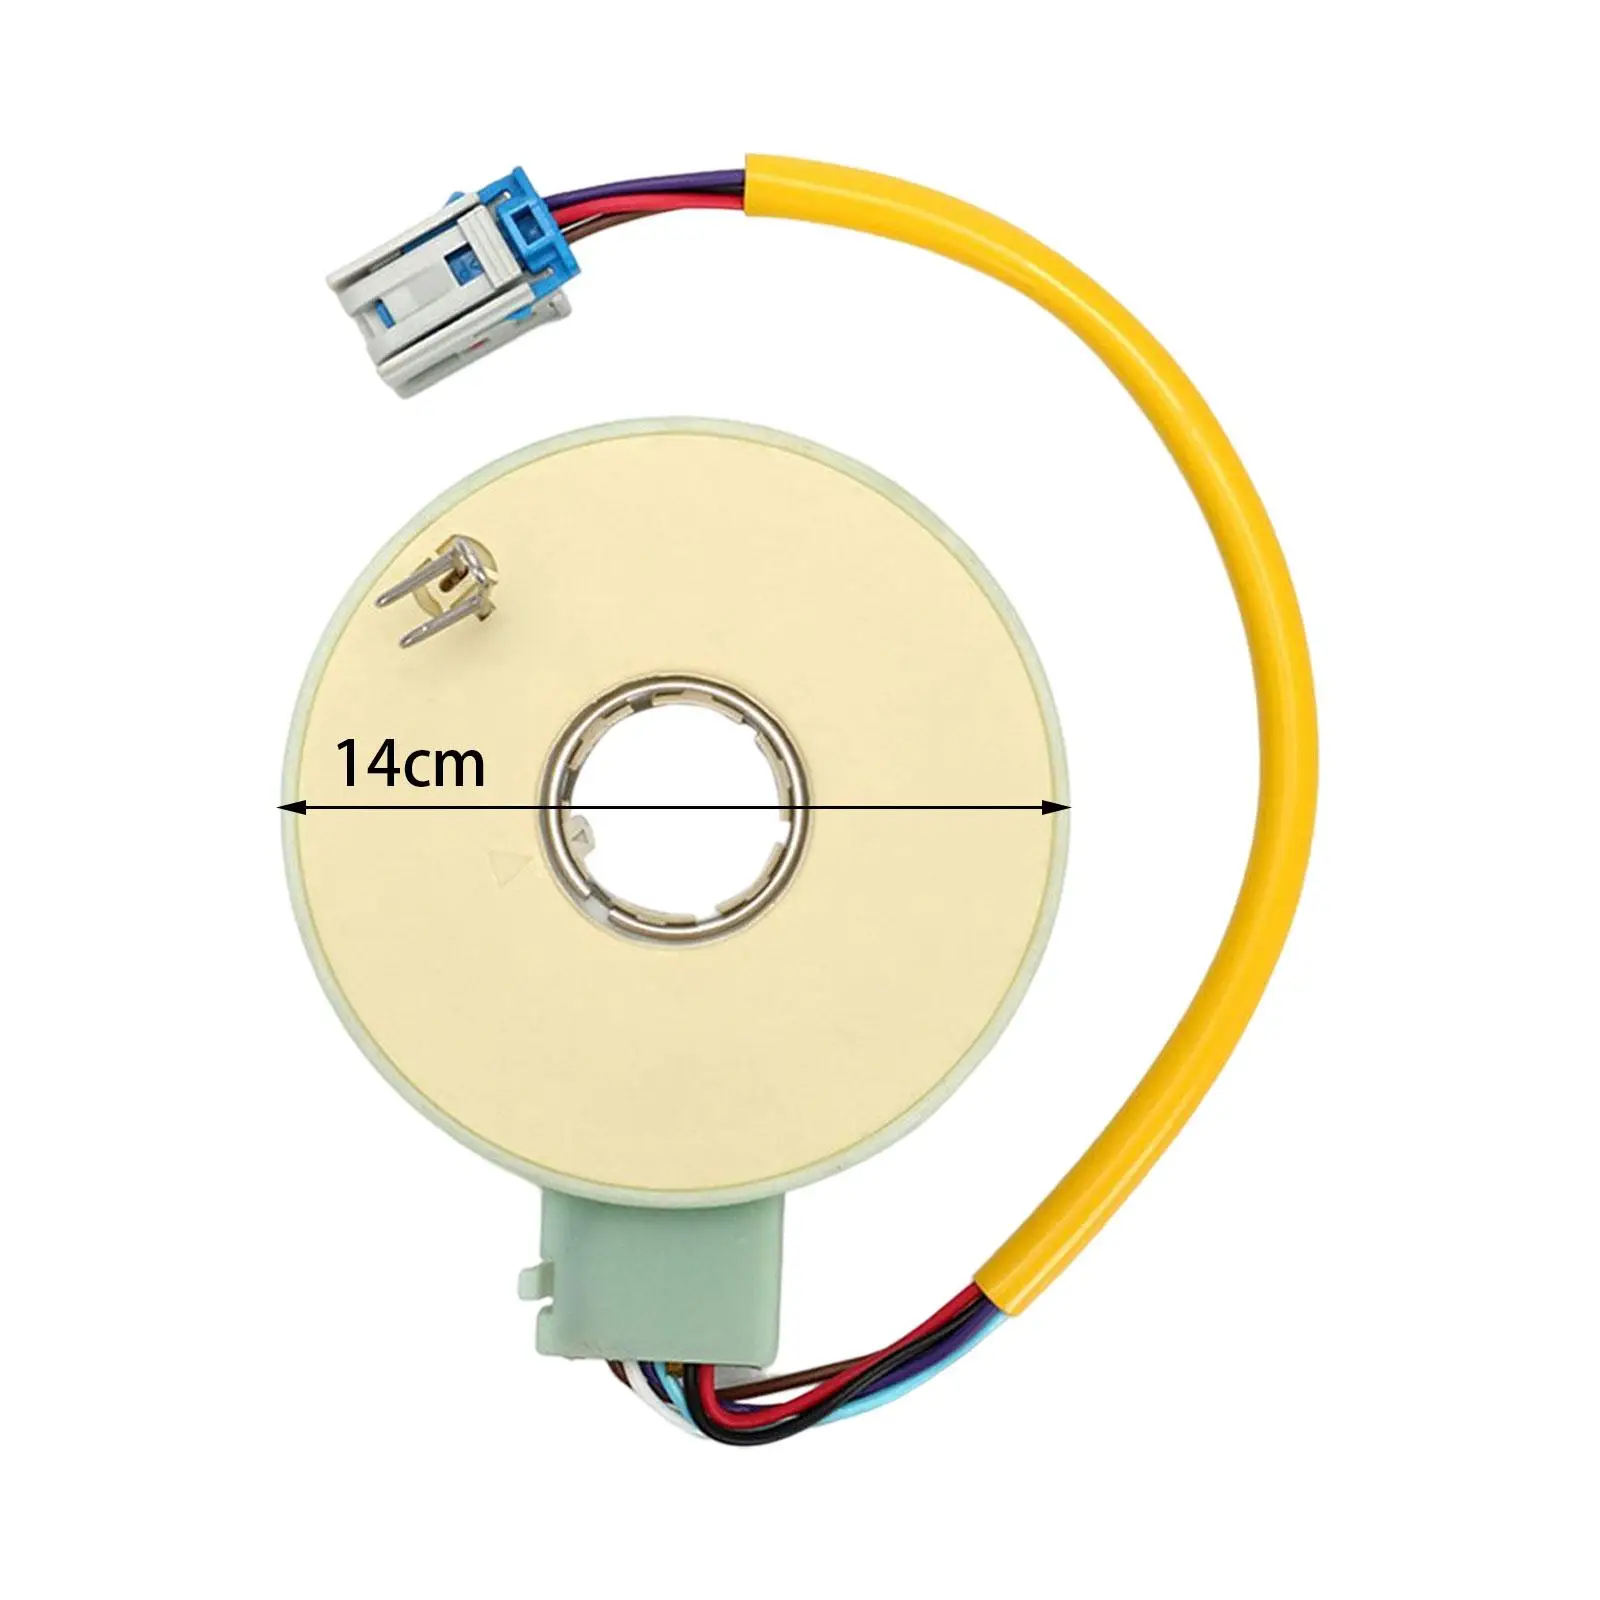 Steering Angle Sensor 55701321 for Fiat PUNTO C1005 Zfa188 Drehmomentsensor C1005 C1006 Drehwinkelsensor Lenkmomentsensor